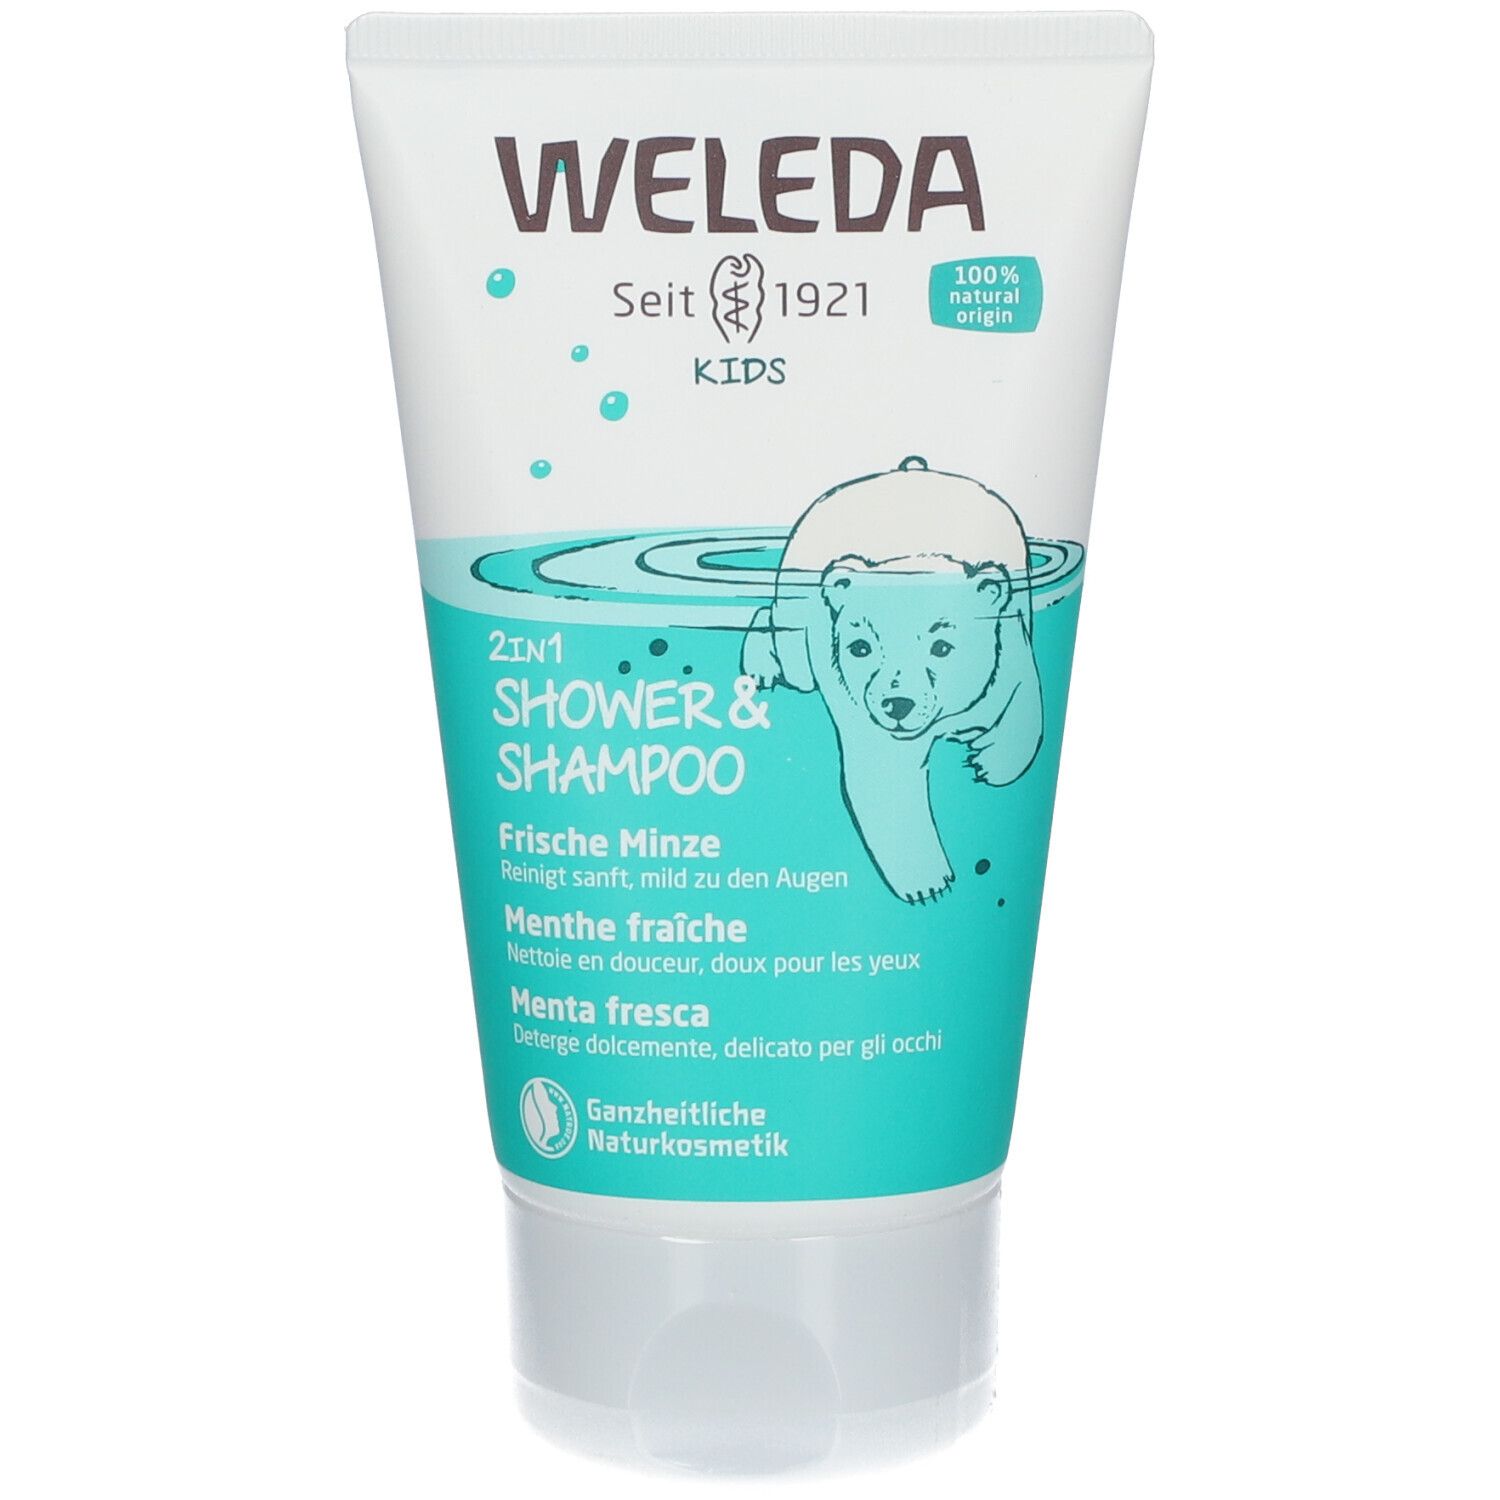 Weleda Kids 2in1 Shower & Shampoo Frische Minze - cremige, milde & frische 2in1 Reinigung für Kinder